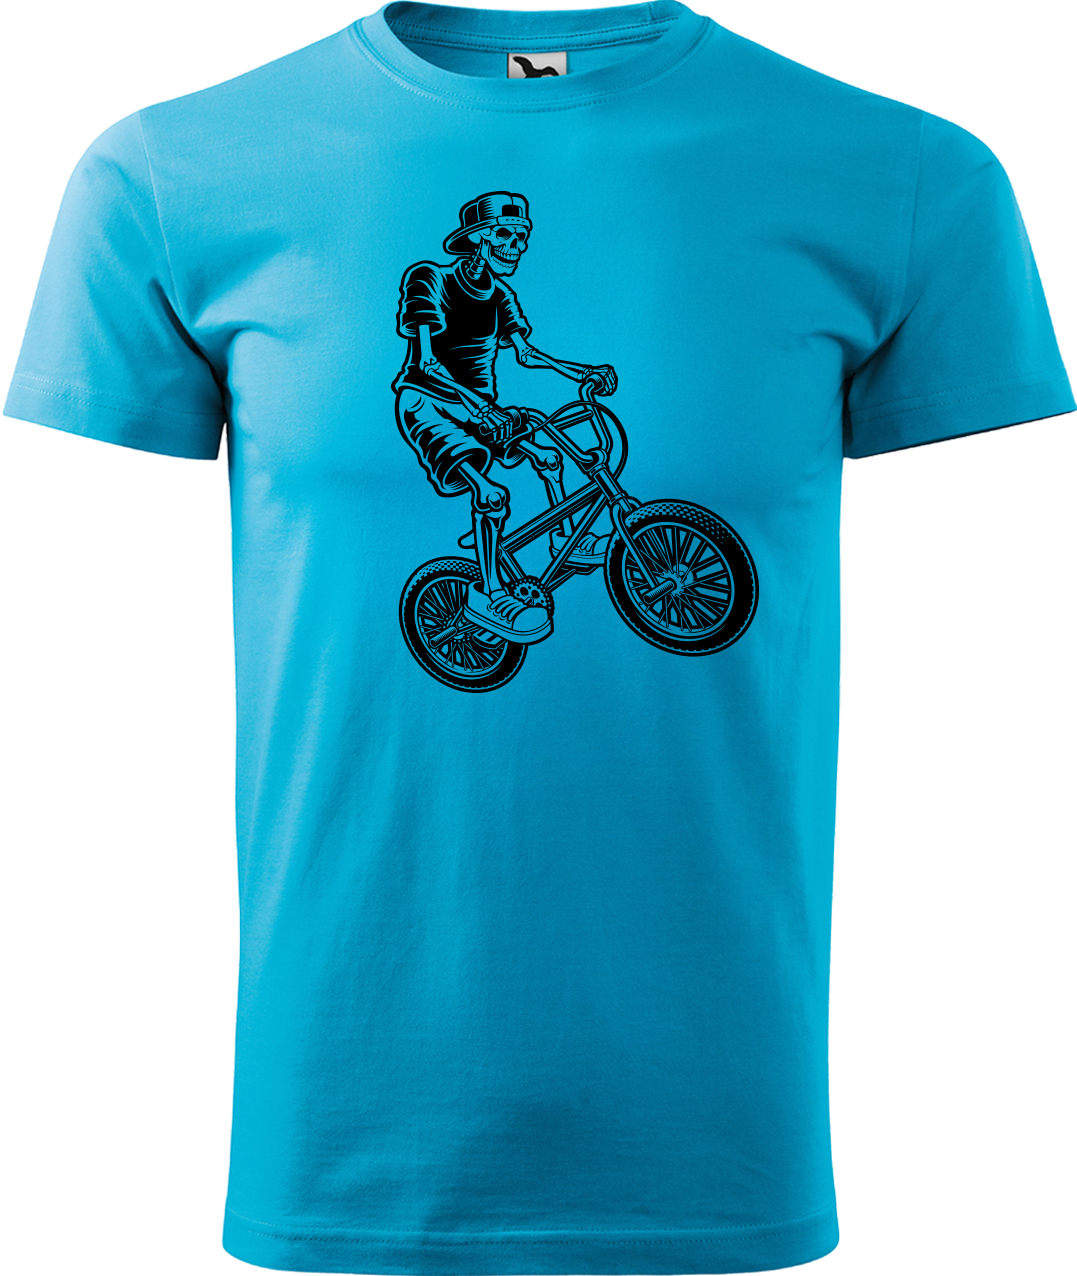 Pánské tričko s kolem - Trial Bike Velikost: M, Barva: Tyrkysová (44)